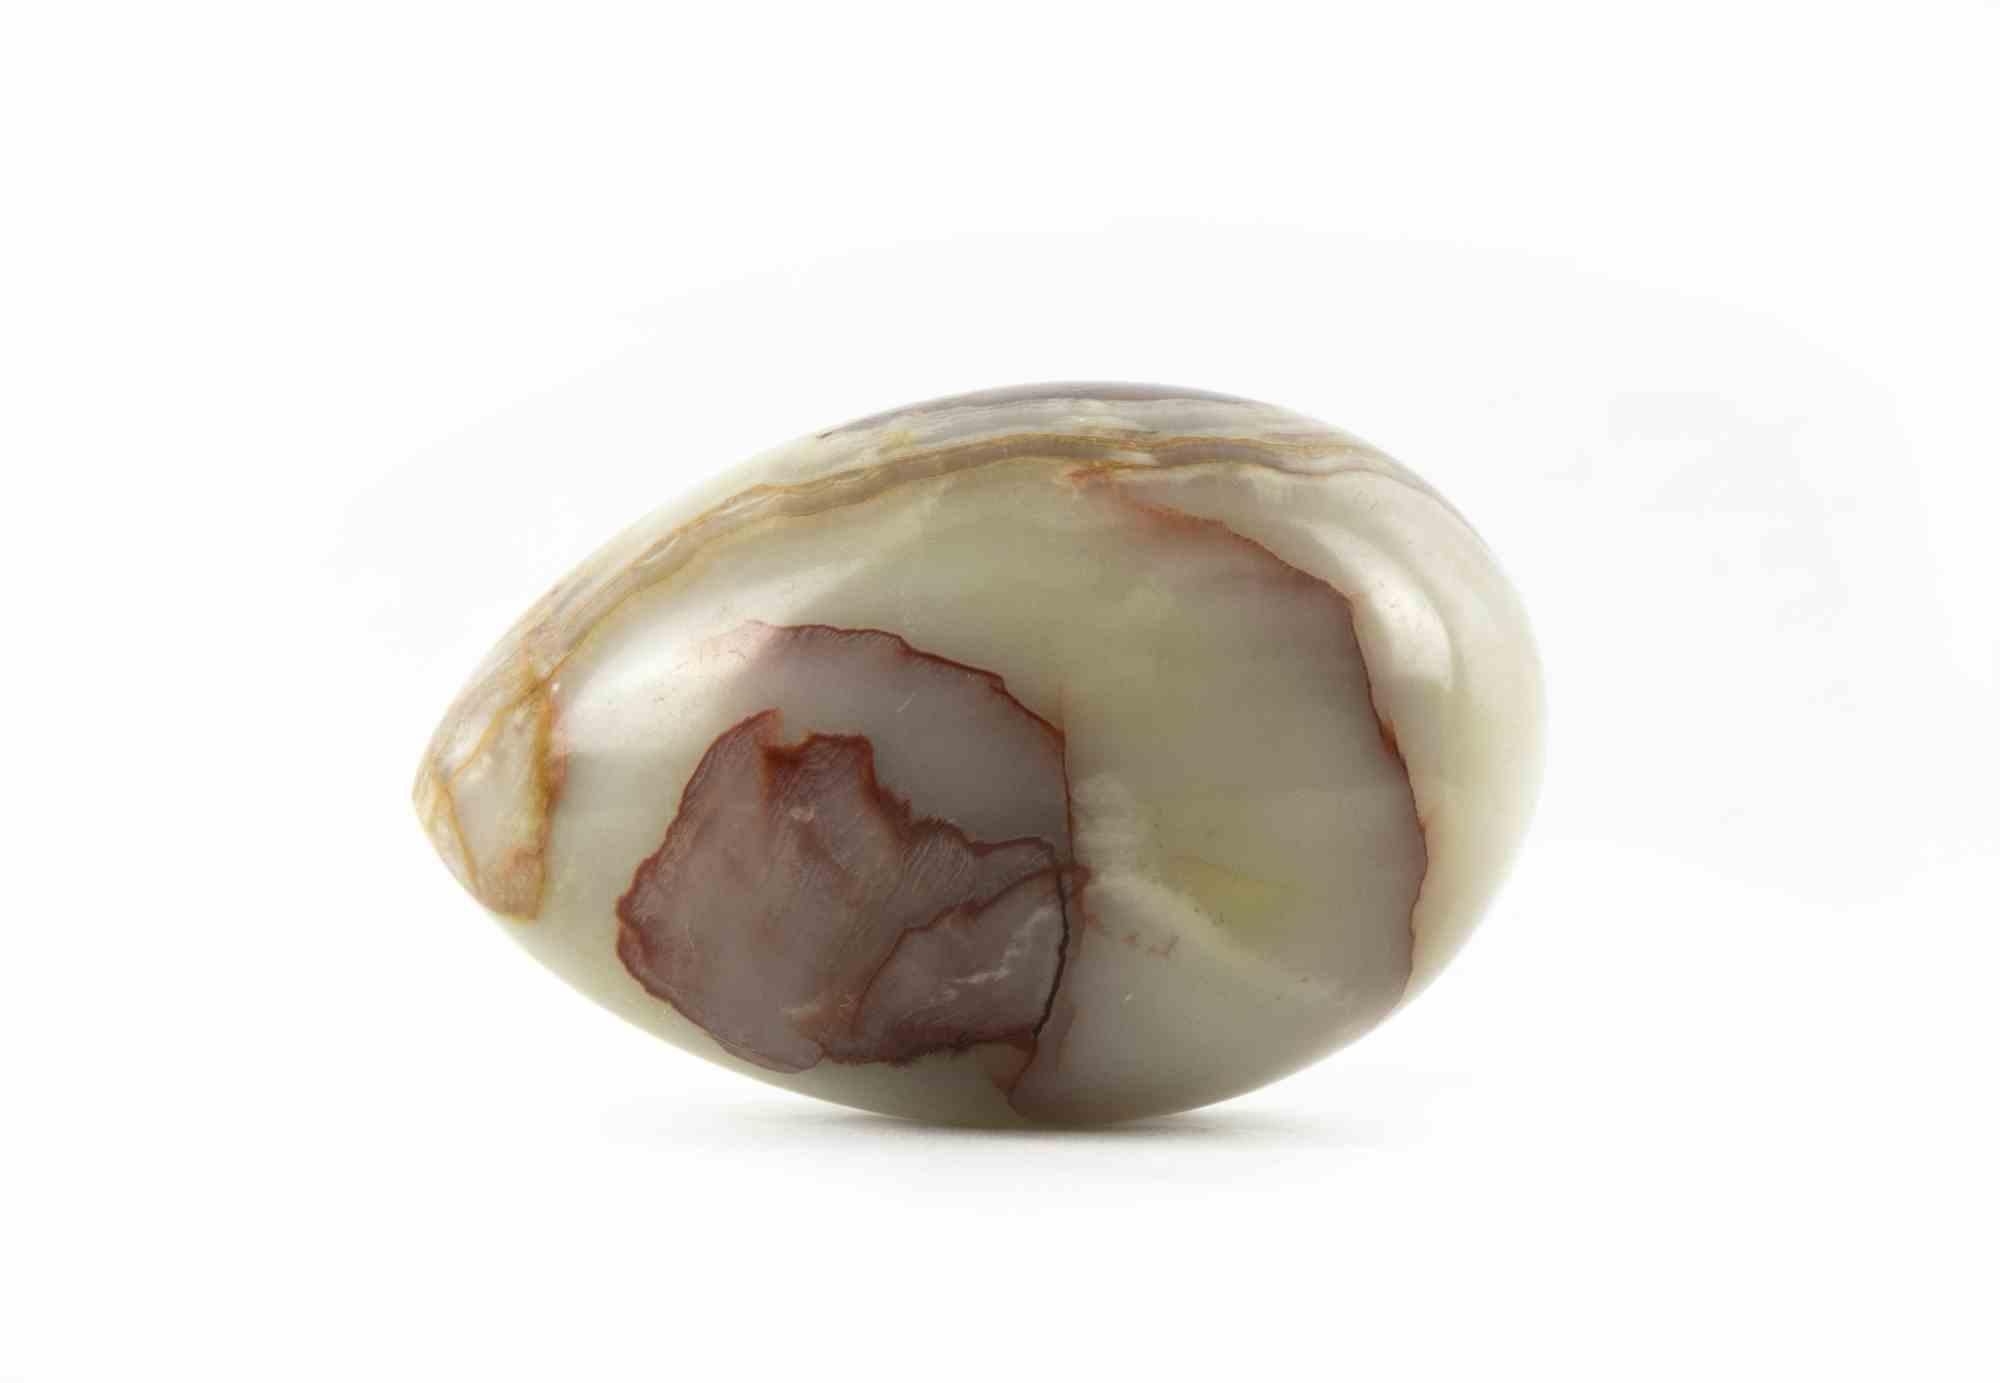 Das Marmor-Ei ist ein originelles Dekorationsobjekt aus der Mitte des 20. Jahrhunderts.

Hergestellt in Italien.

Das Werk ist vollständig in Marmor ausgeführt.

Das Ei ist in einem einzigen marmorierten rosa-weißen Block mit dunklen Adern